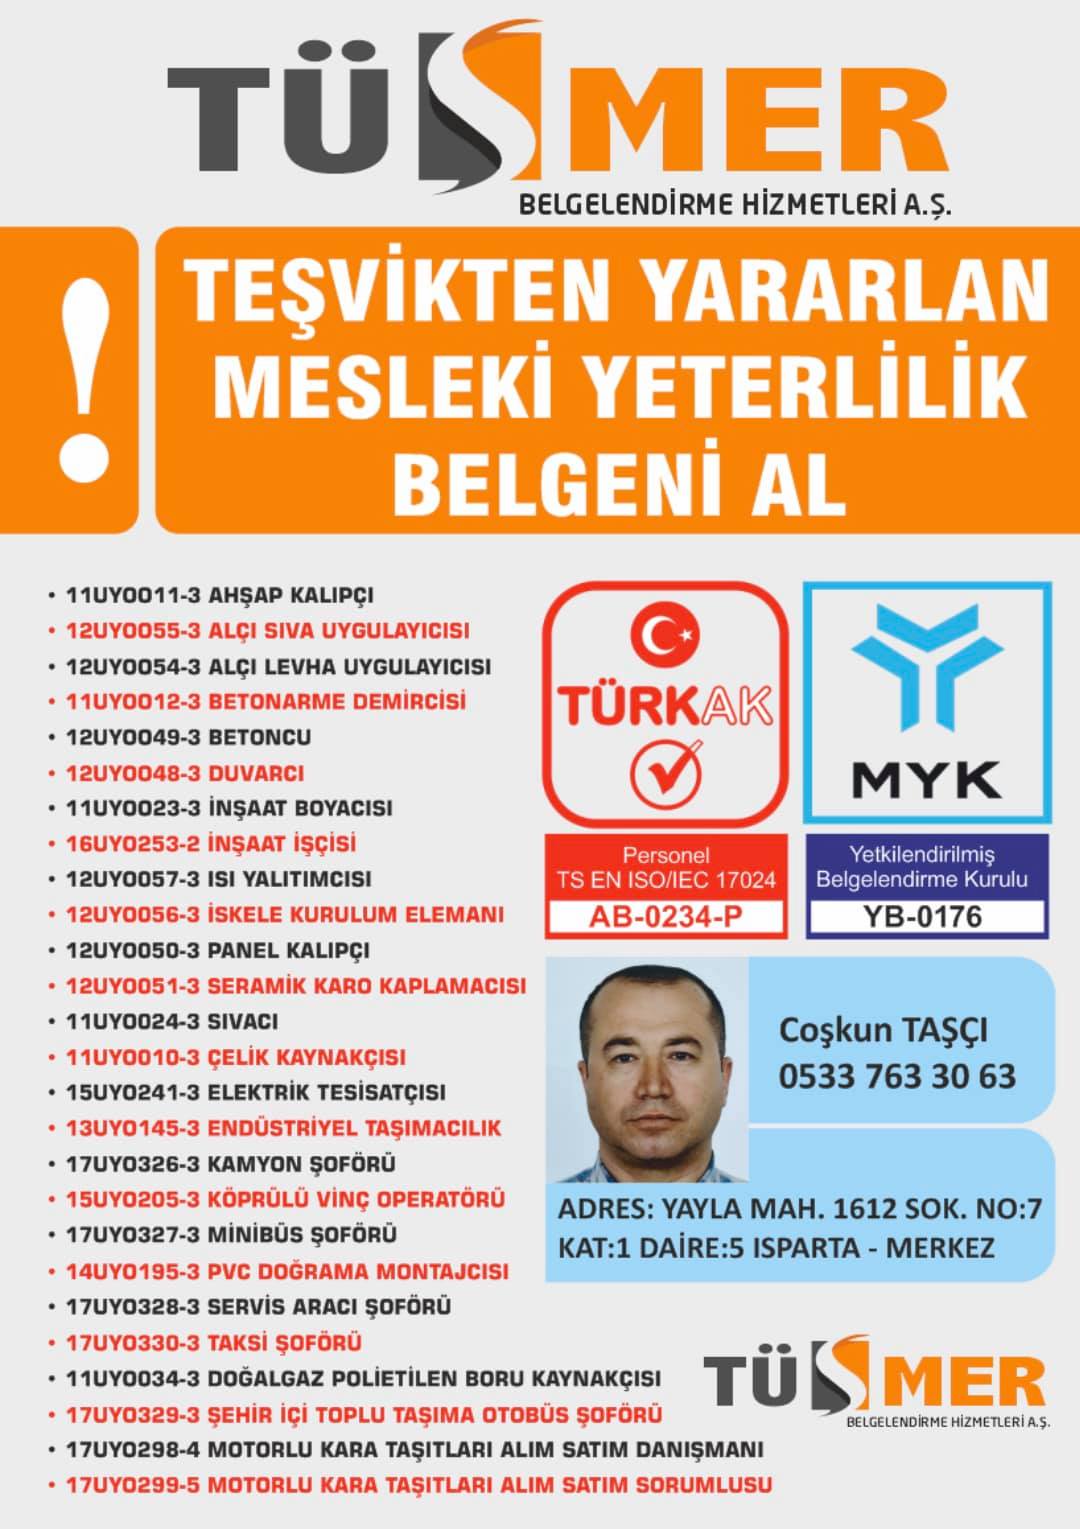 MYK MESLEKİ YETERLİLİK BELGESİ Osmanağa Kadıköy İstanbul